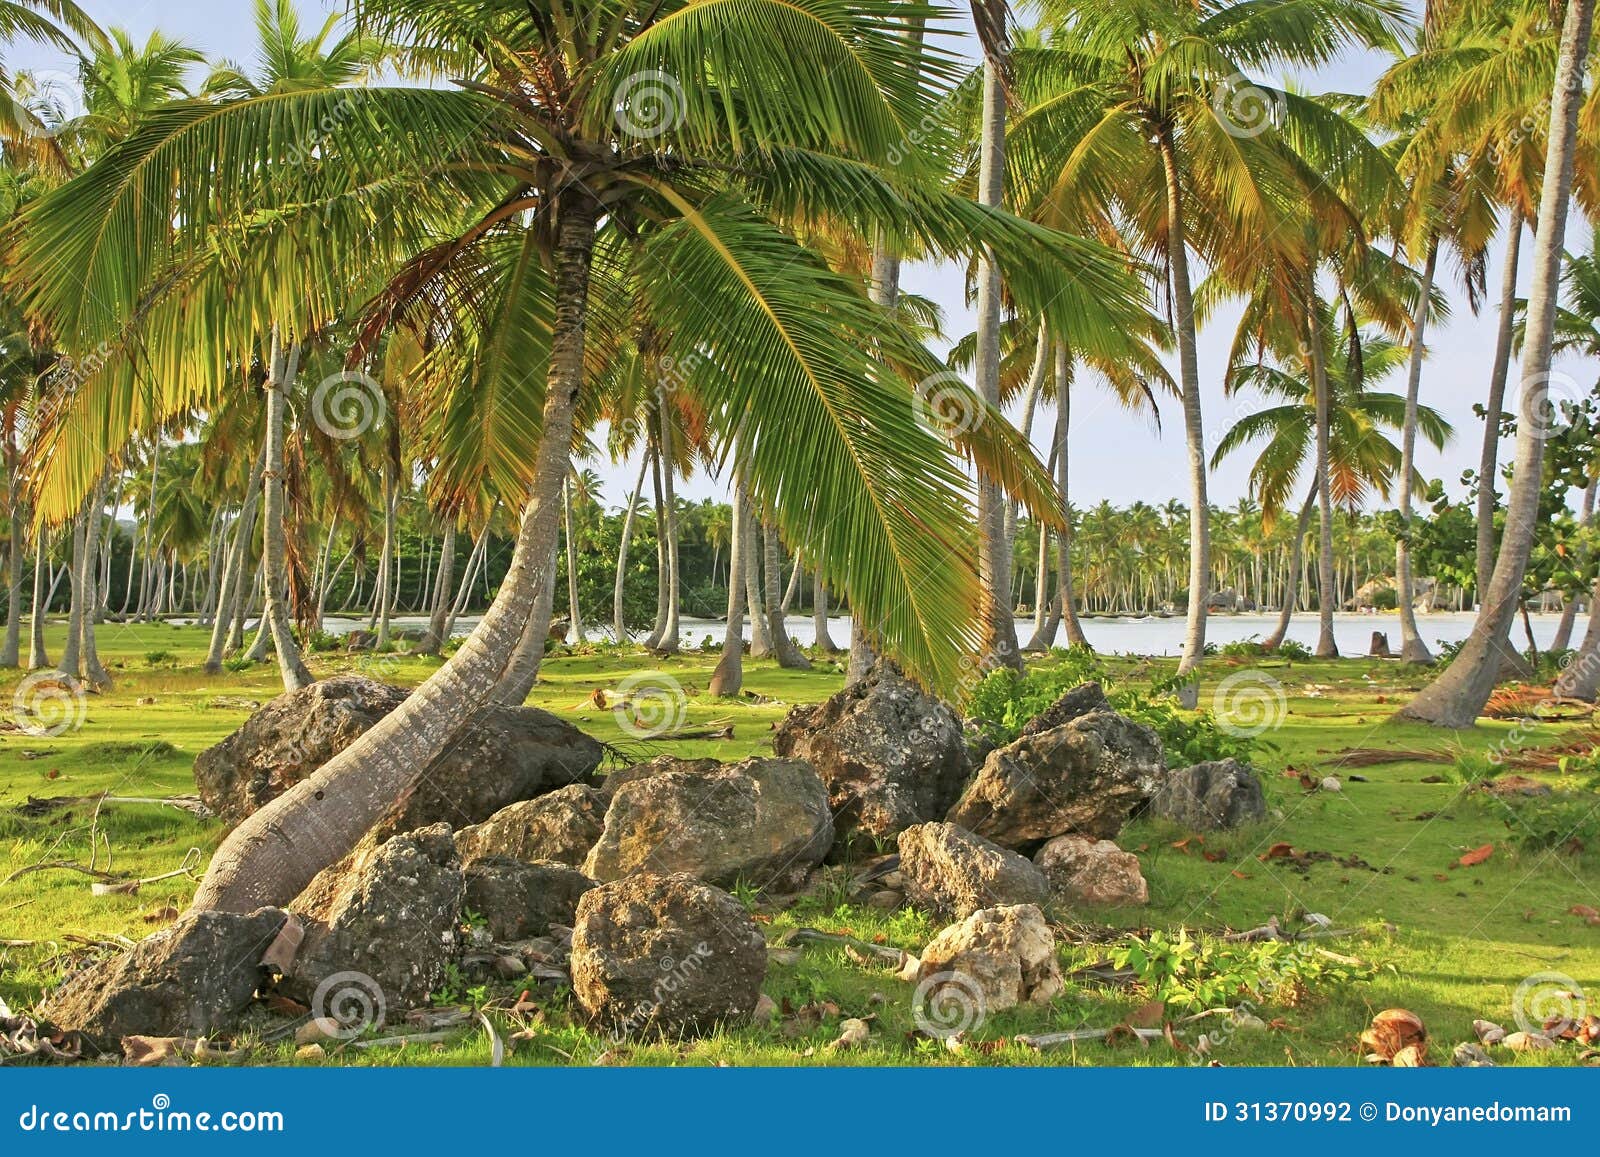 coconut trees grove, las galeras beach, samana peninsula